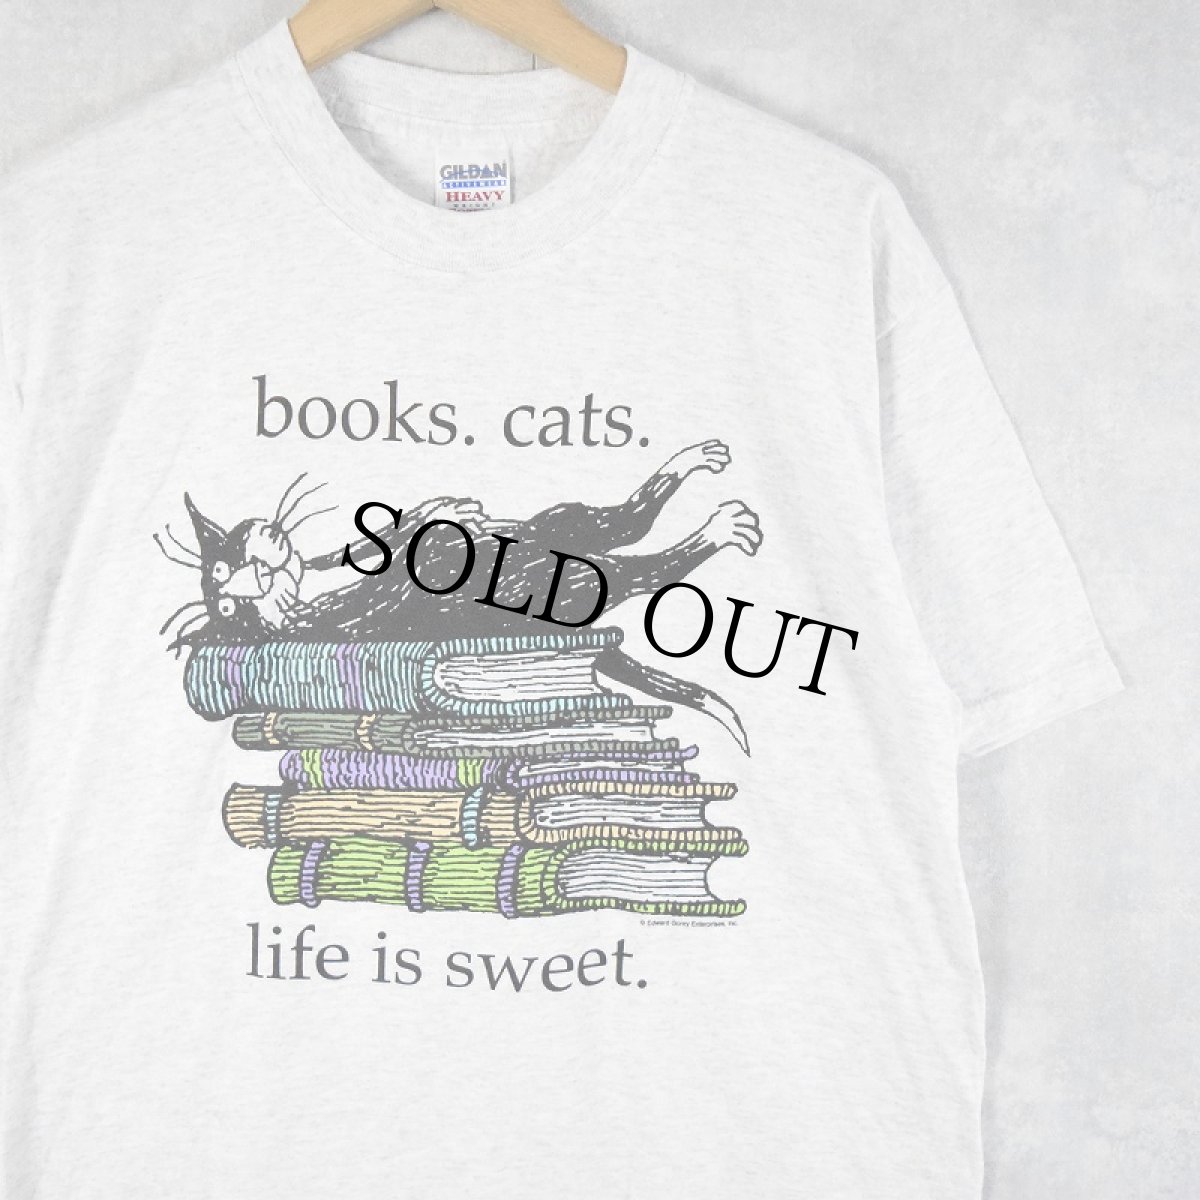 画像1: Edward Gorey "books.cats." イラストプリントTシャツ M (1)